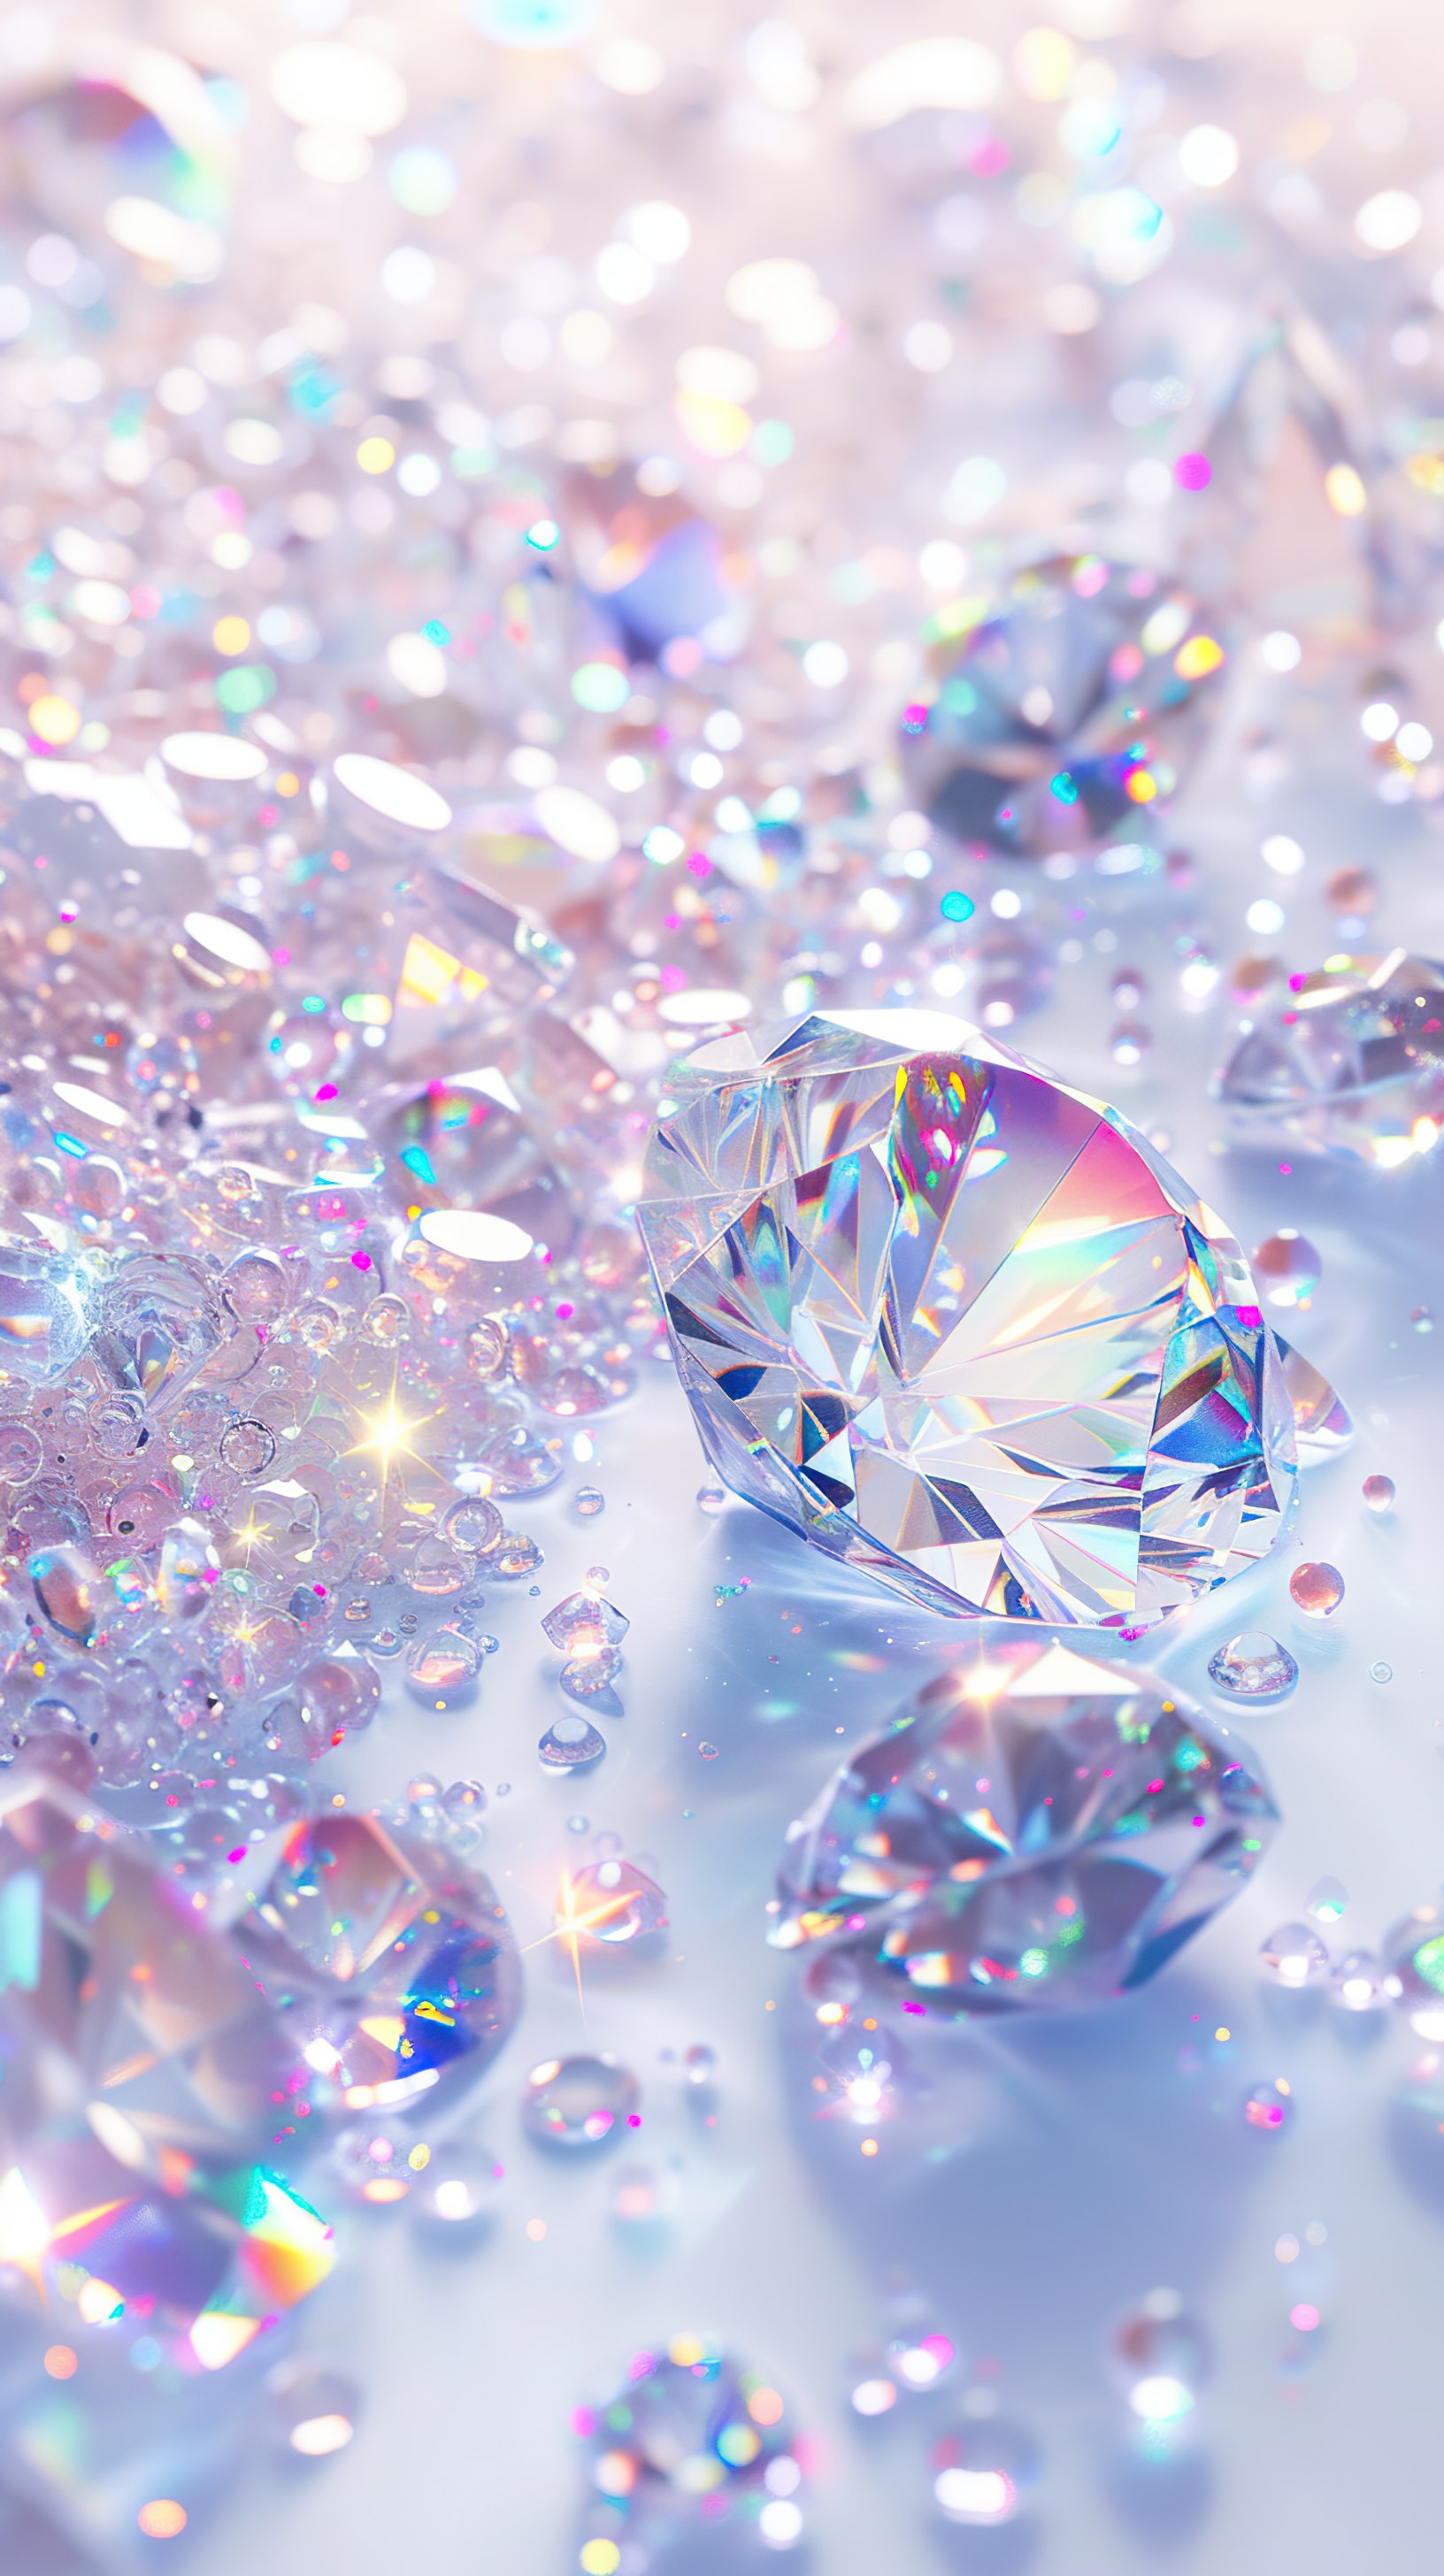 Shiny Diamonds falling on white surface background. 3D illustration